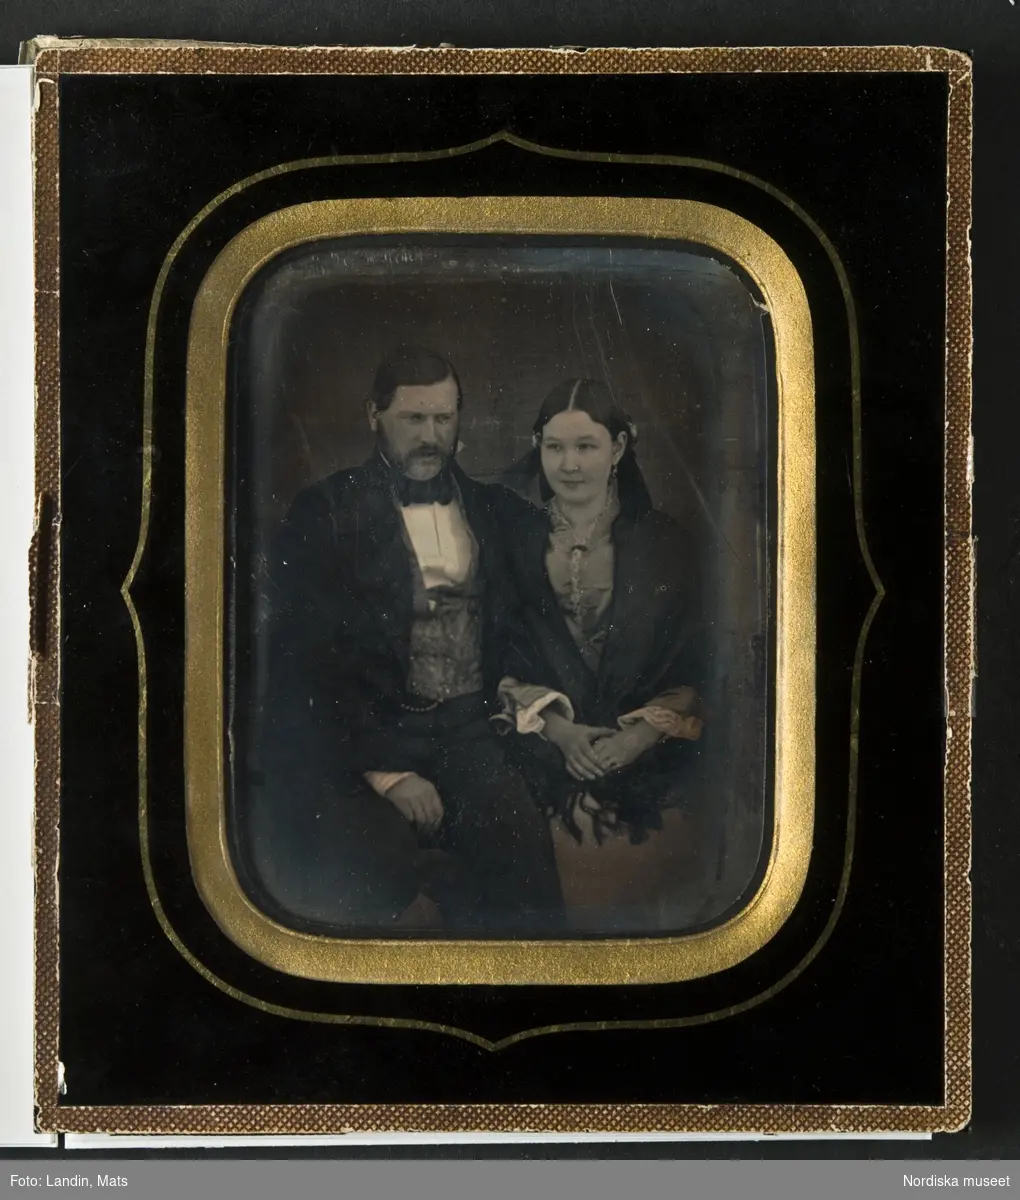 Porträtt av Adolf Drakenberg (1827–1896) och hans hustru Augusta Adler (1834–1866), knäbild, sittande. Han, till vänster, med mustasch och polisonger, klädd i svart frack eller bonjour. Hon, till höger, med mittbenat hår, ljus klänning med vita manschetter och svart sjal. Dagerrotyp / daguerreotyp helt glasad. Passepartout i svart färg målad direkt på glaset. Svart bakstycke av papp med två påklistrade vita etiketter med handkriven text: "Johan Adolf Drakenberg/f. 1827 +1896/hans hustru Augusta Adler f. 1834 +1866" och "Patron/Adolf Drakenberg och /hans hustru Augusta Adler/porträtt taget 1852". Nordiska museet inv.nr 143947. 
-
Portrait of Adolf Drakenberg (1827–1896) and his wife Augusta Adler (1834–1866). Third-plate daguerreotype dated 1852.